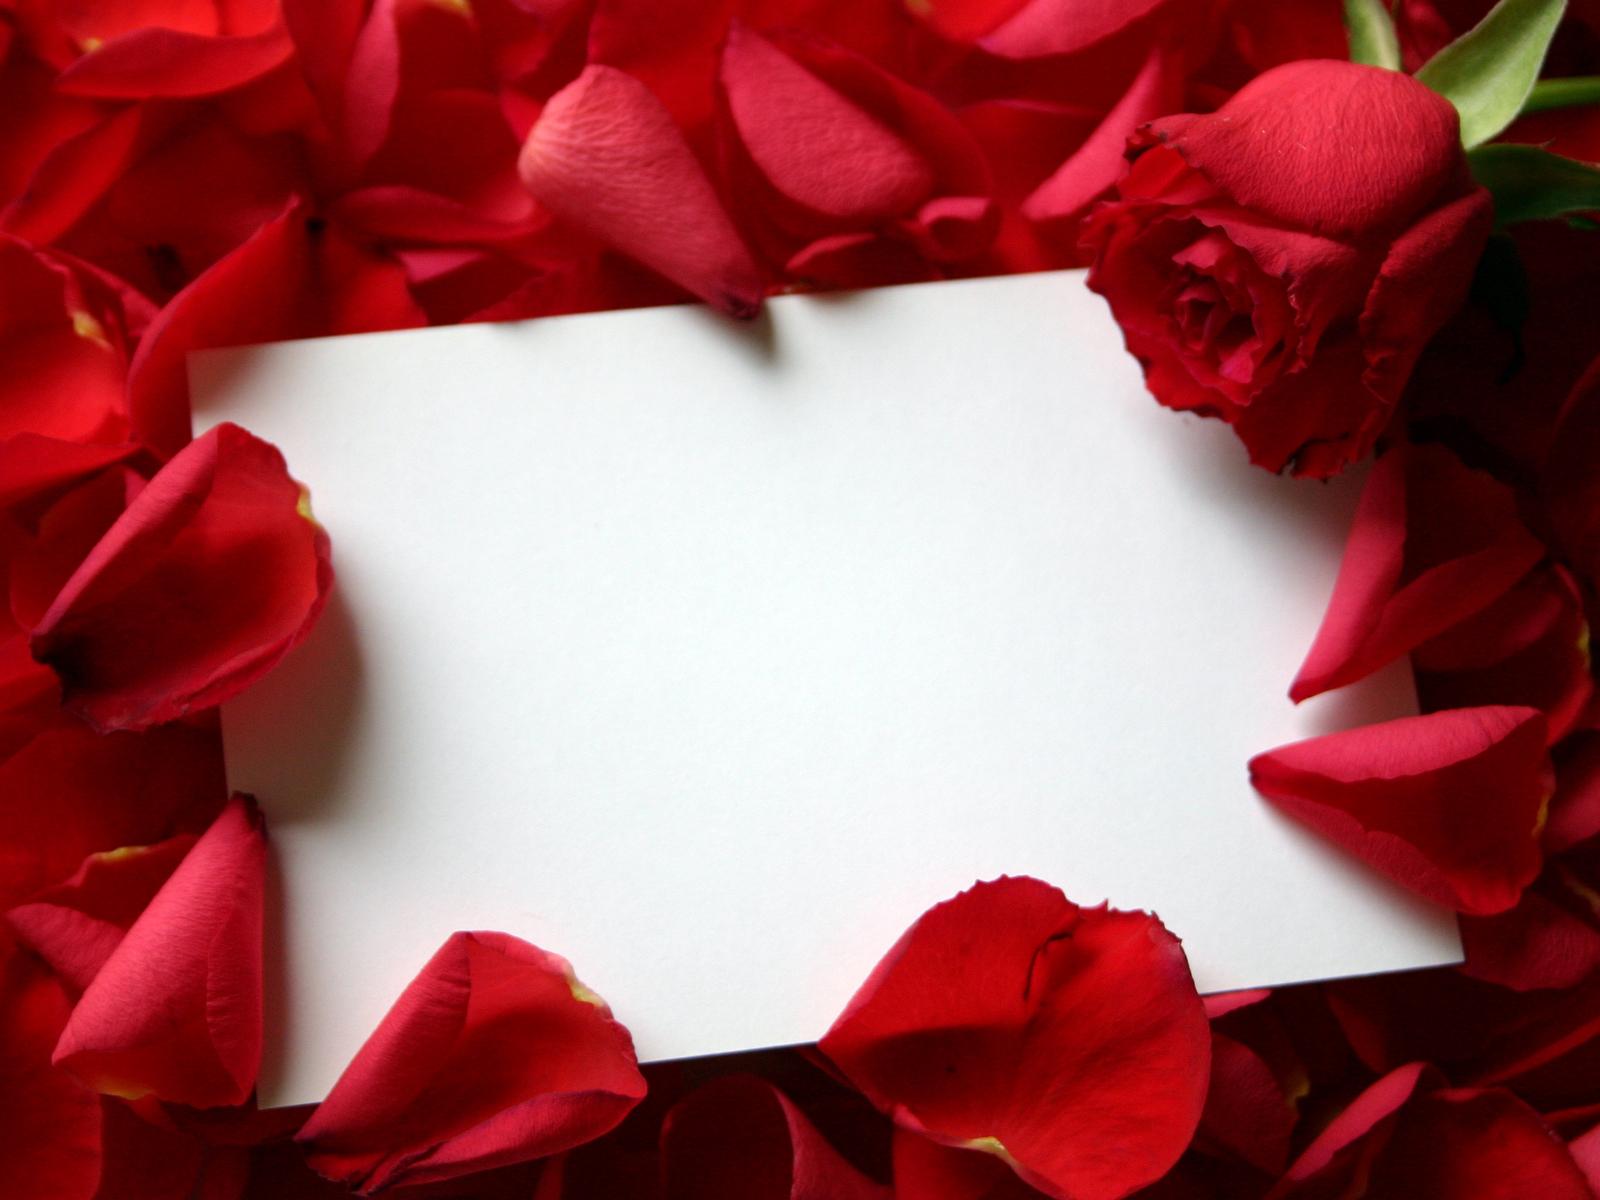 http://4.bp.blogspot.com/-8qKsU_9LeFQ/ToWxKGsxBVI/AAAAAAAAAiI/jtXRKs-U9qk/s1600/Roses-Love-Letter-wallpaper.jpg